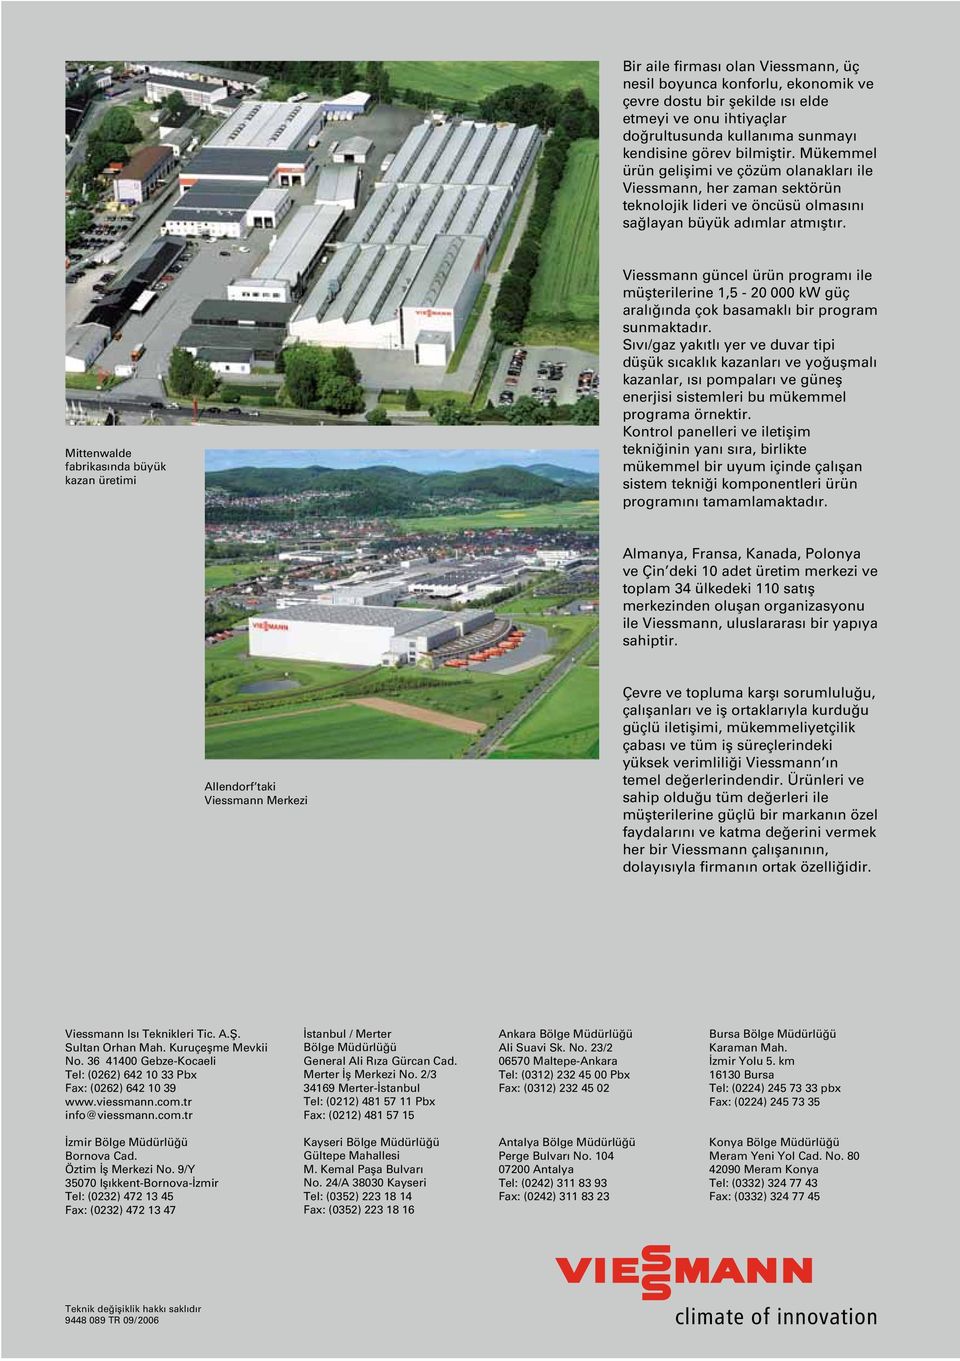 Mittenwalde fabrikasïnda büyük kazan üretimi Viessmann güncel ürün programı ile müëterilerine 1,5-20 000 kw güç aralıñında çok basamaklı bir program sunmaktadır.